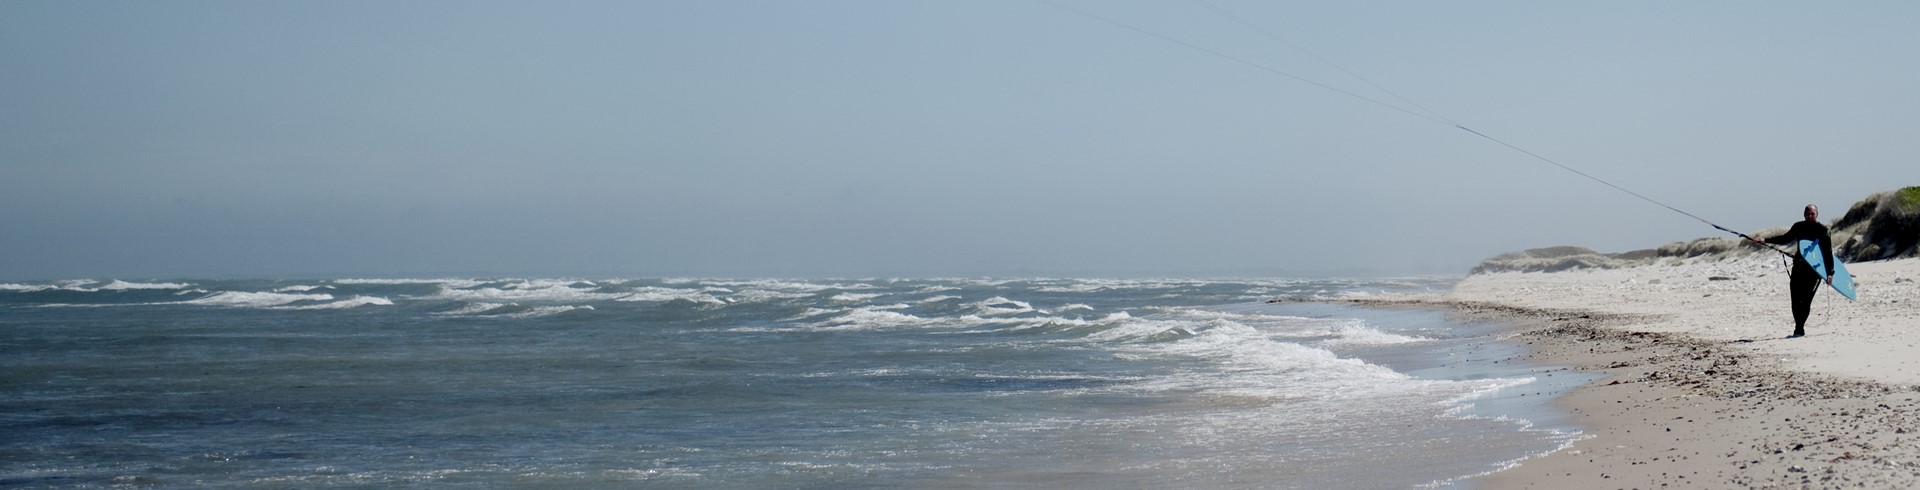 Hav, kitesurfer går på stranden med sin kite.jpg